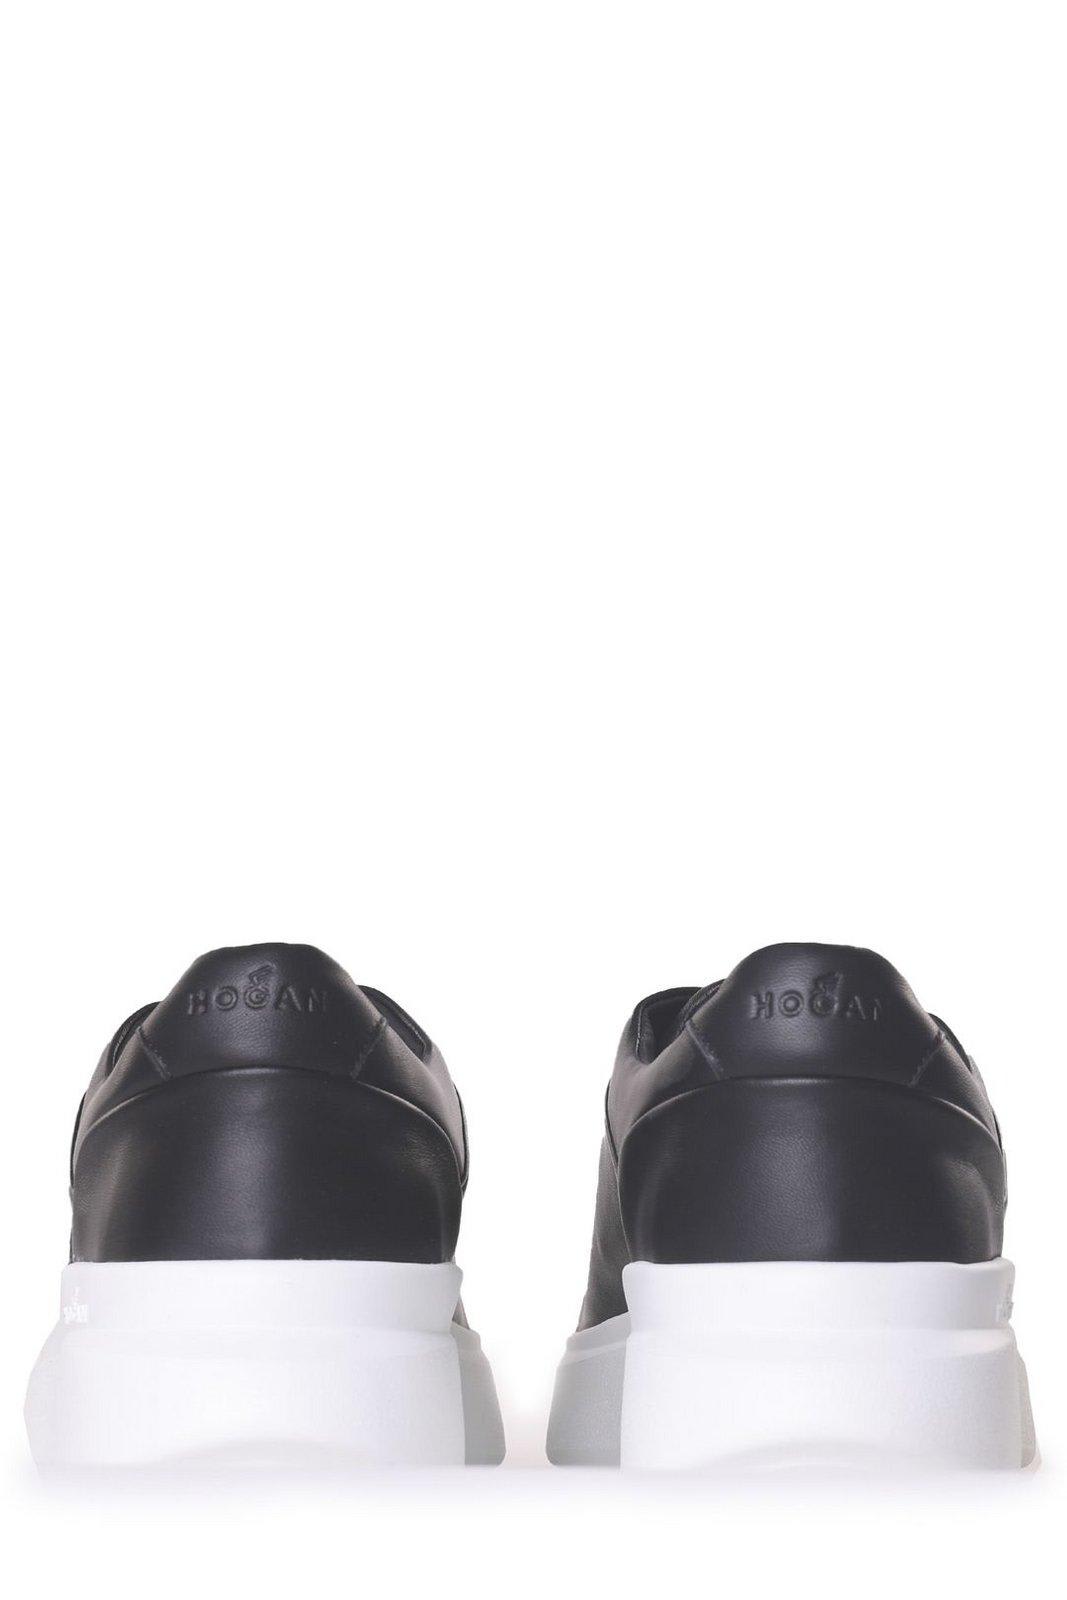 Shop Hogan H580 Bull Low-top Sneakers In Black